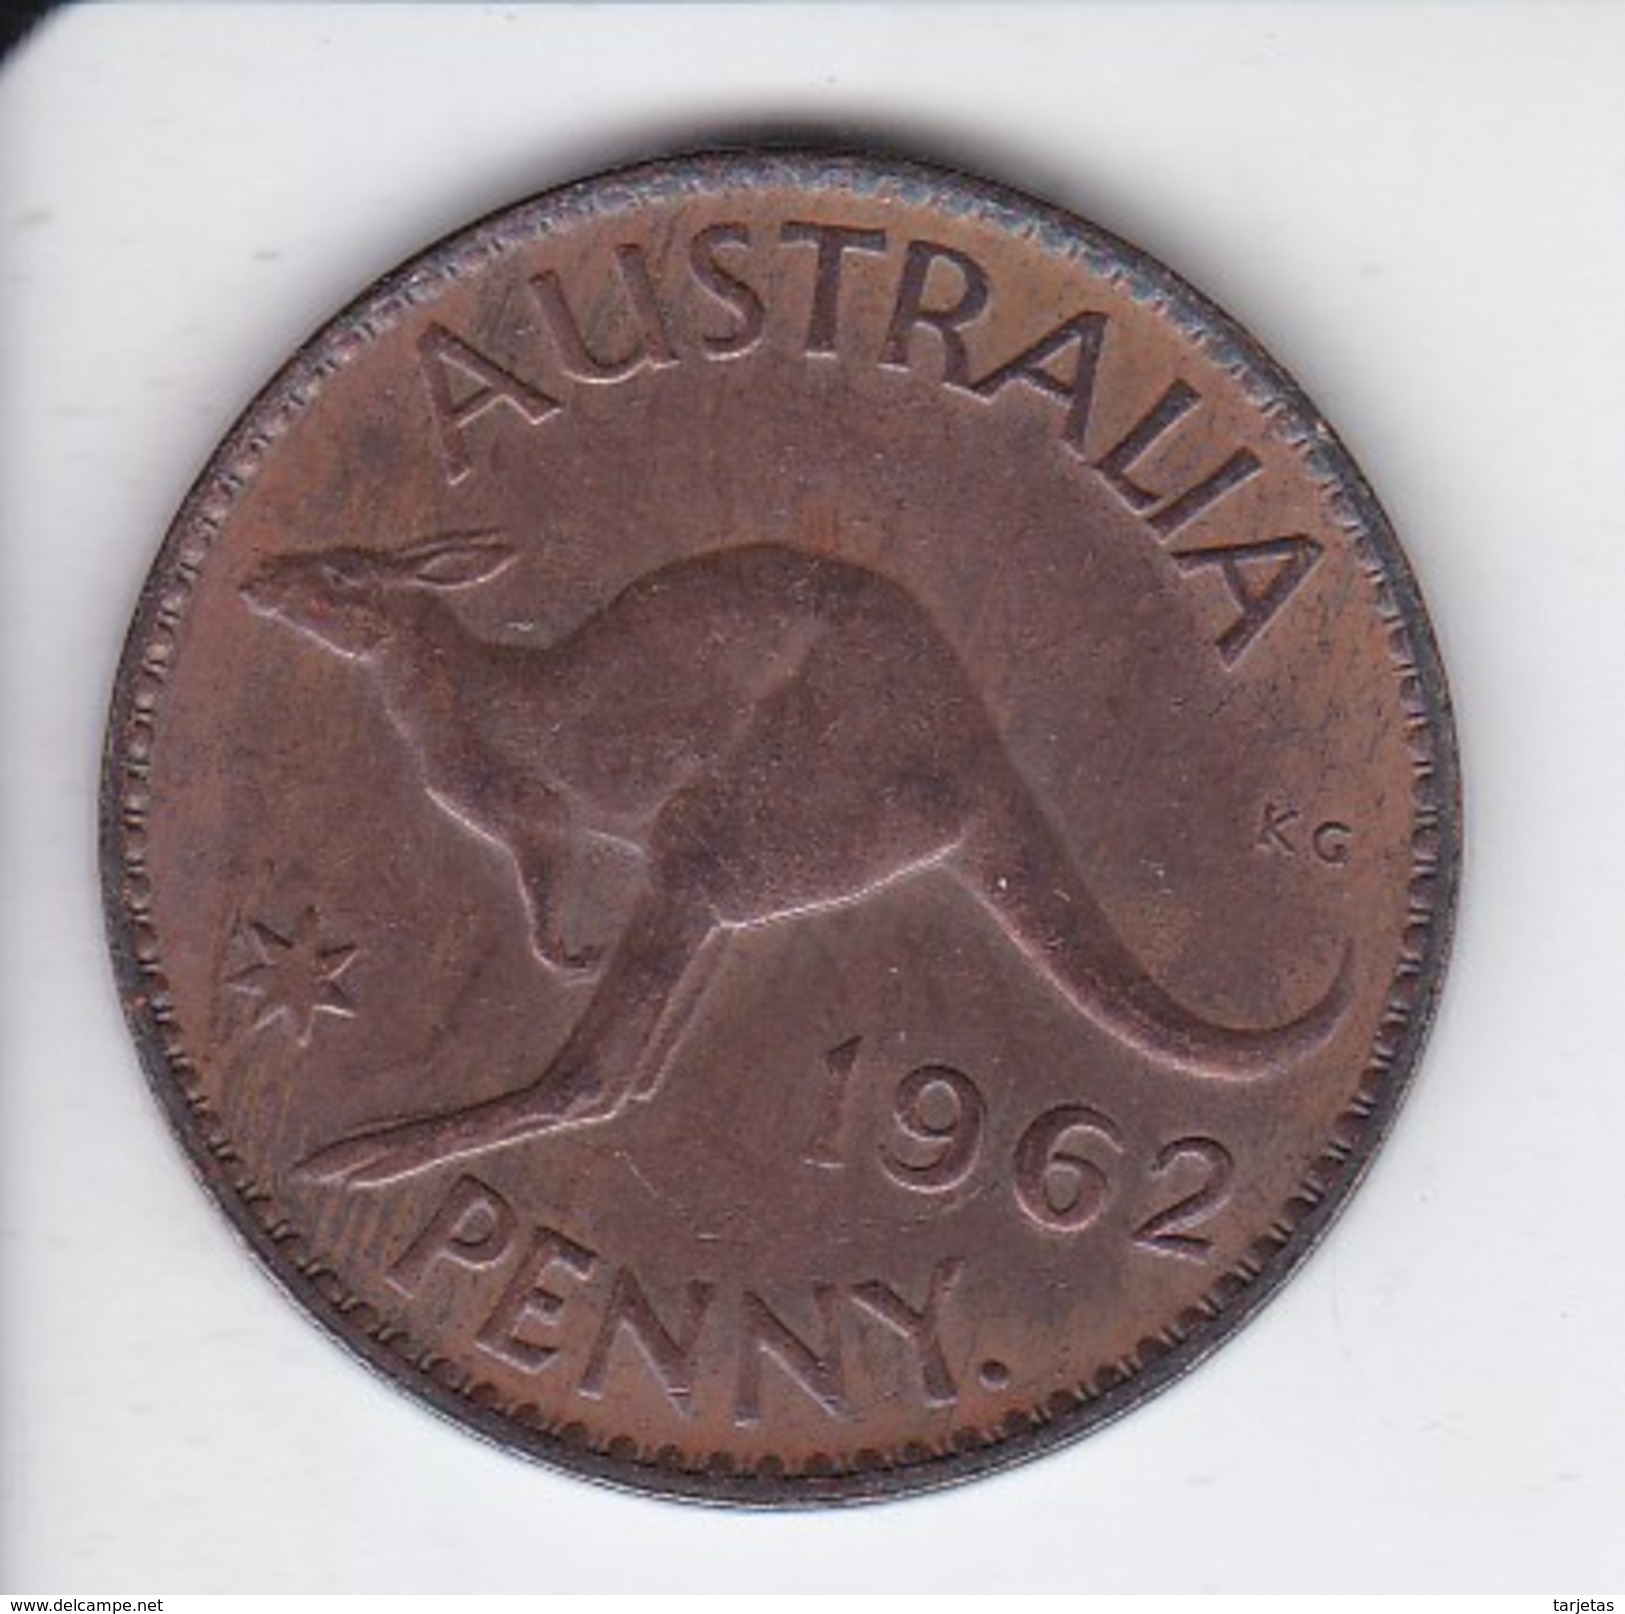 MONEDA DE AUSTRALIA DE 1 PENNY DEL AÑO 1962 CANGURO (KANGAROO) - Penny